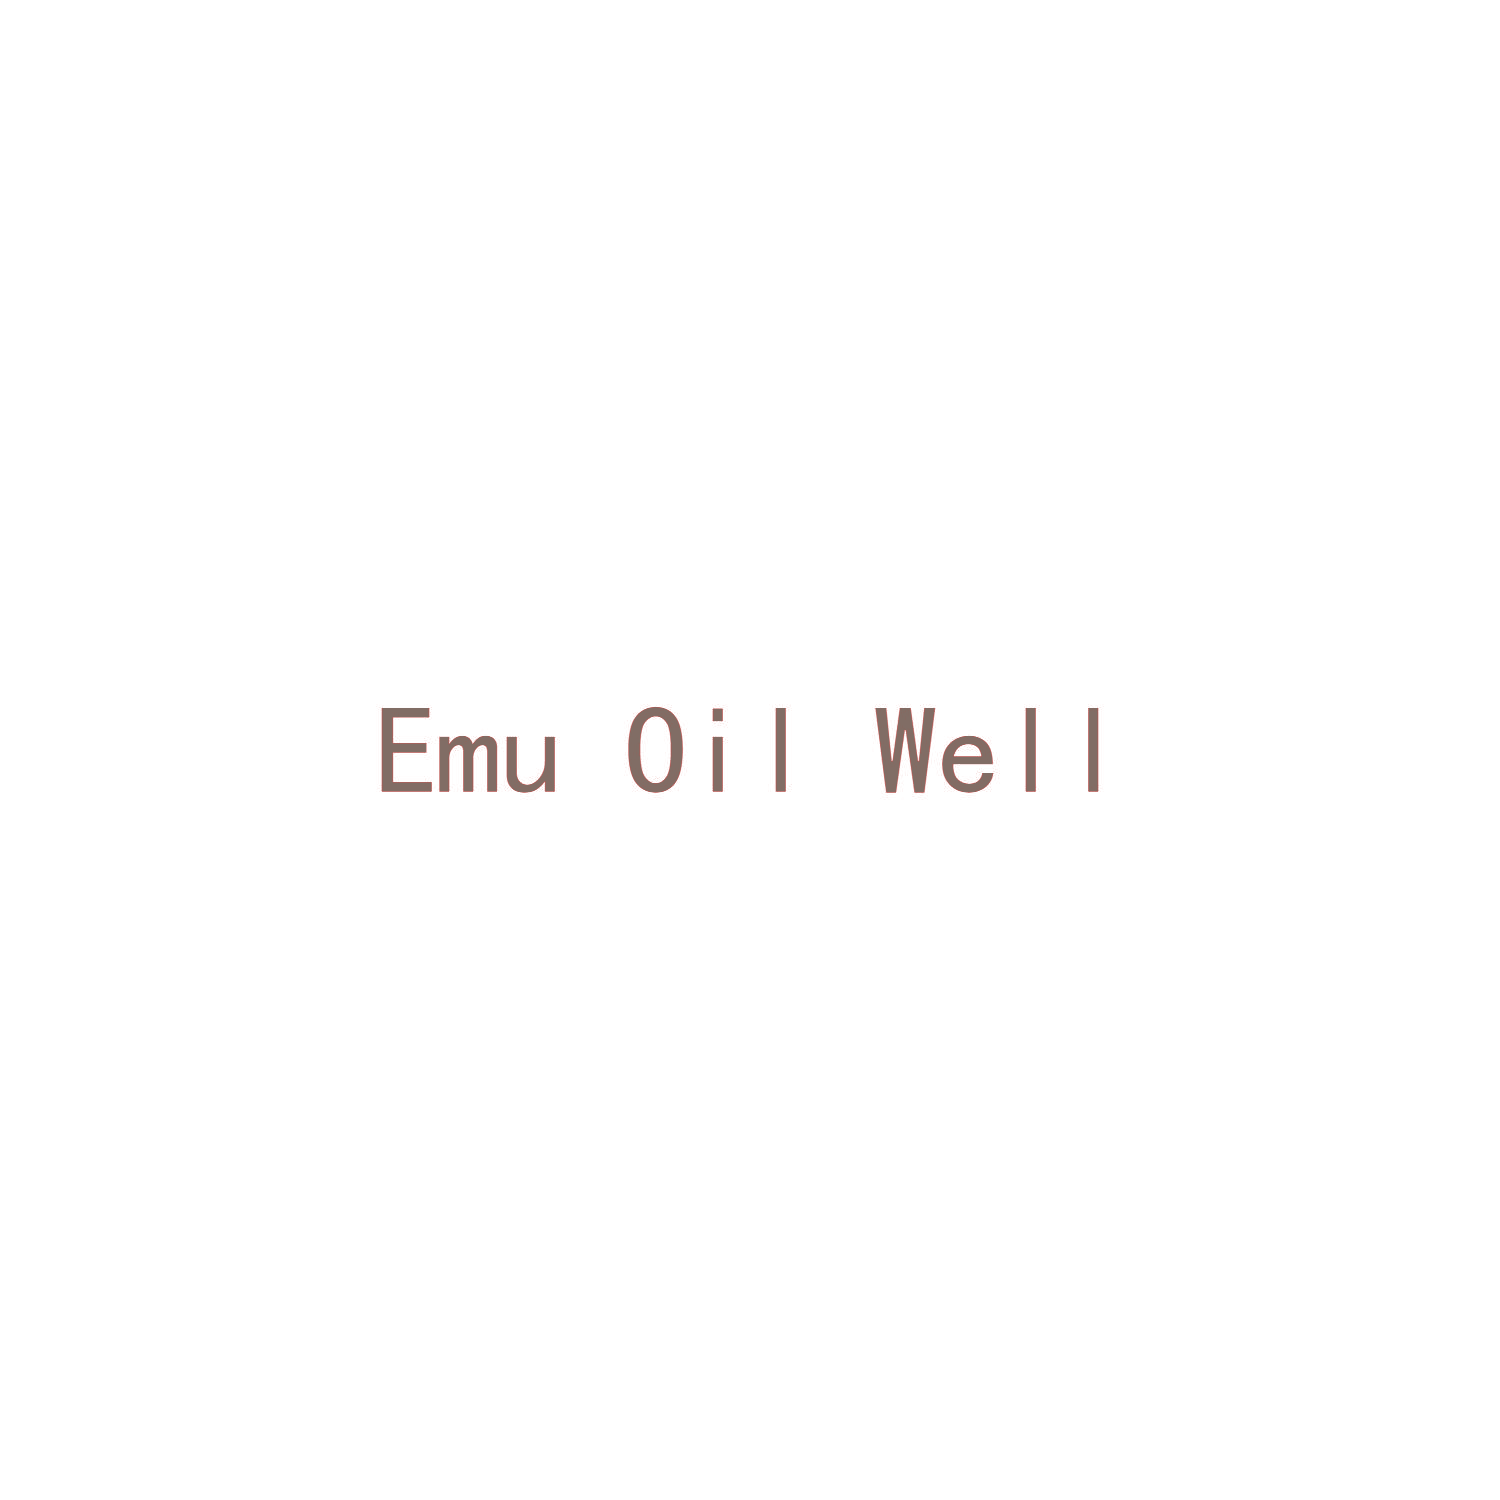 EMU OIL WELL